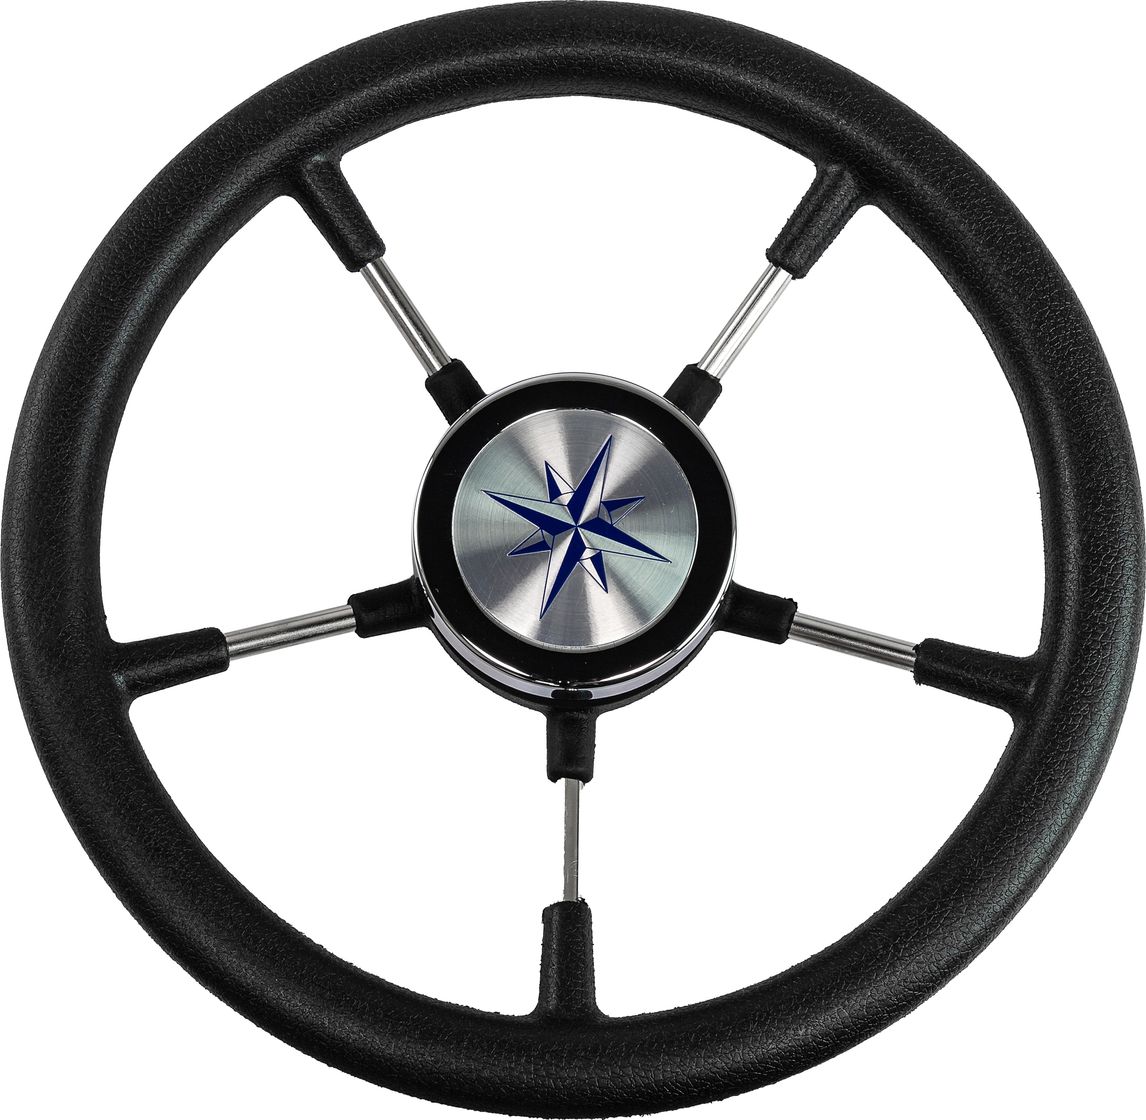 Рулевое колесо RIVA RSL обод черный, спицы серебряные д. 320 мм VN732022-01 рулевое колесо orion обод черный спицы серебряные д 355 мм vn960101 01